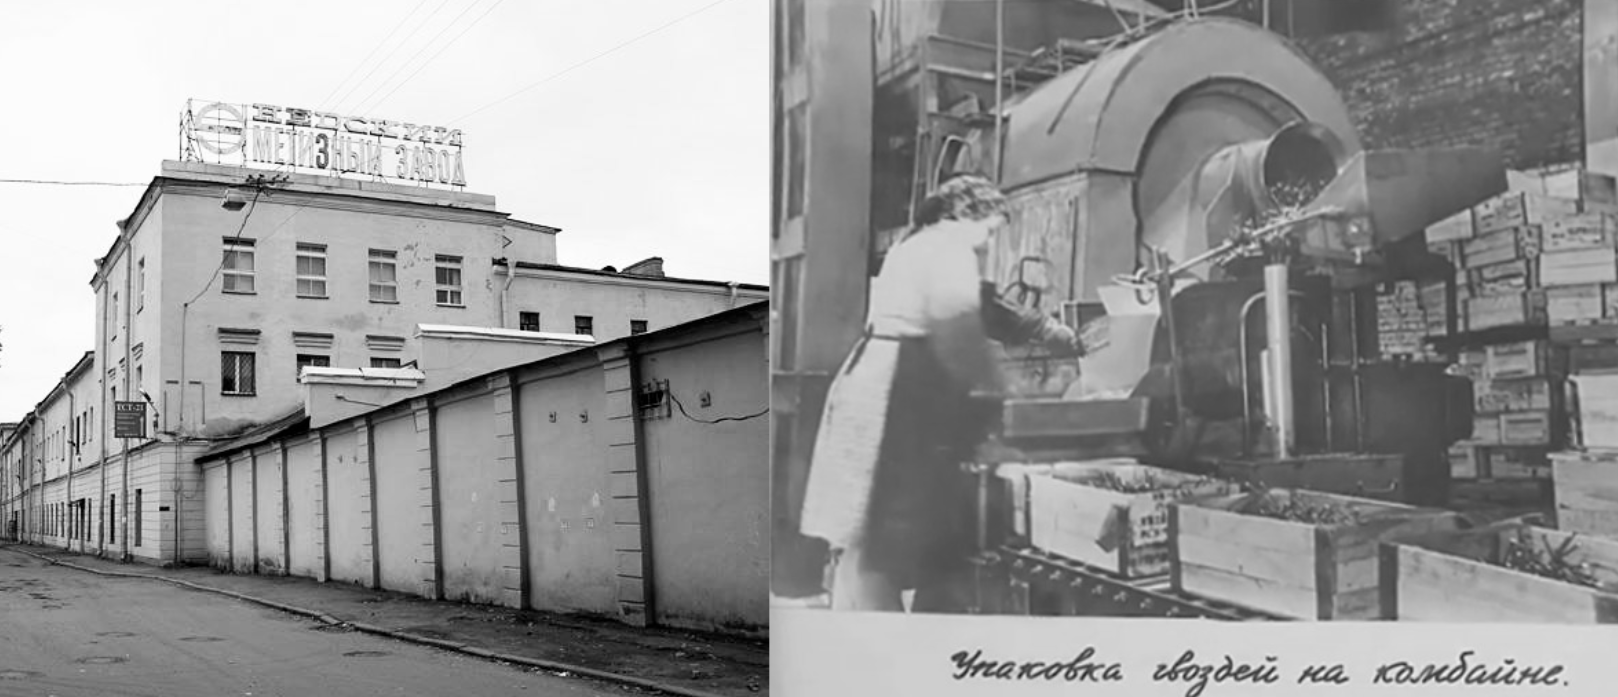 Завод "Метиз" бесперебойно работал с 1896 года, но в конце 1990-х, когда им управлял отец Дениса Свердлова, обанкротился. Фото © citywalls.ru